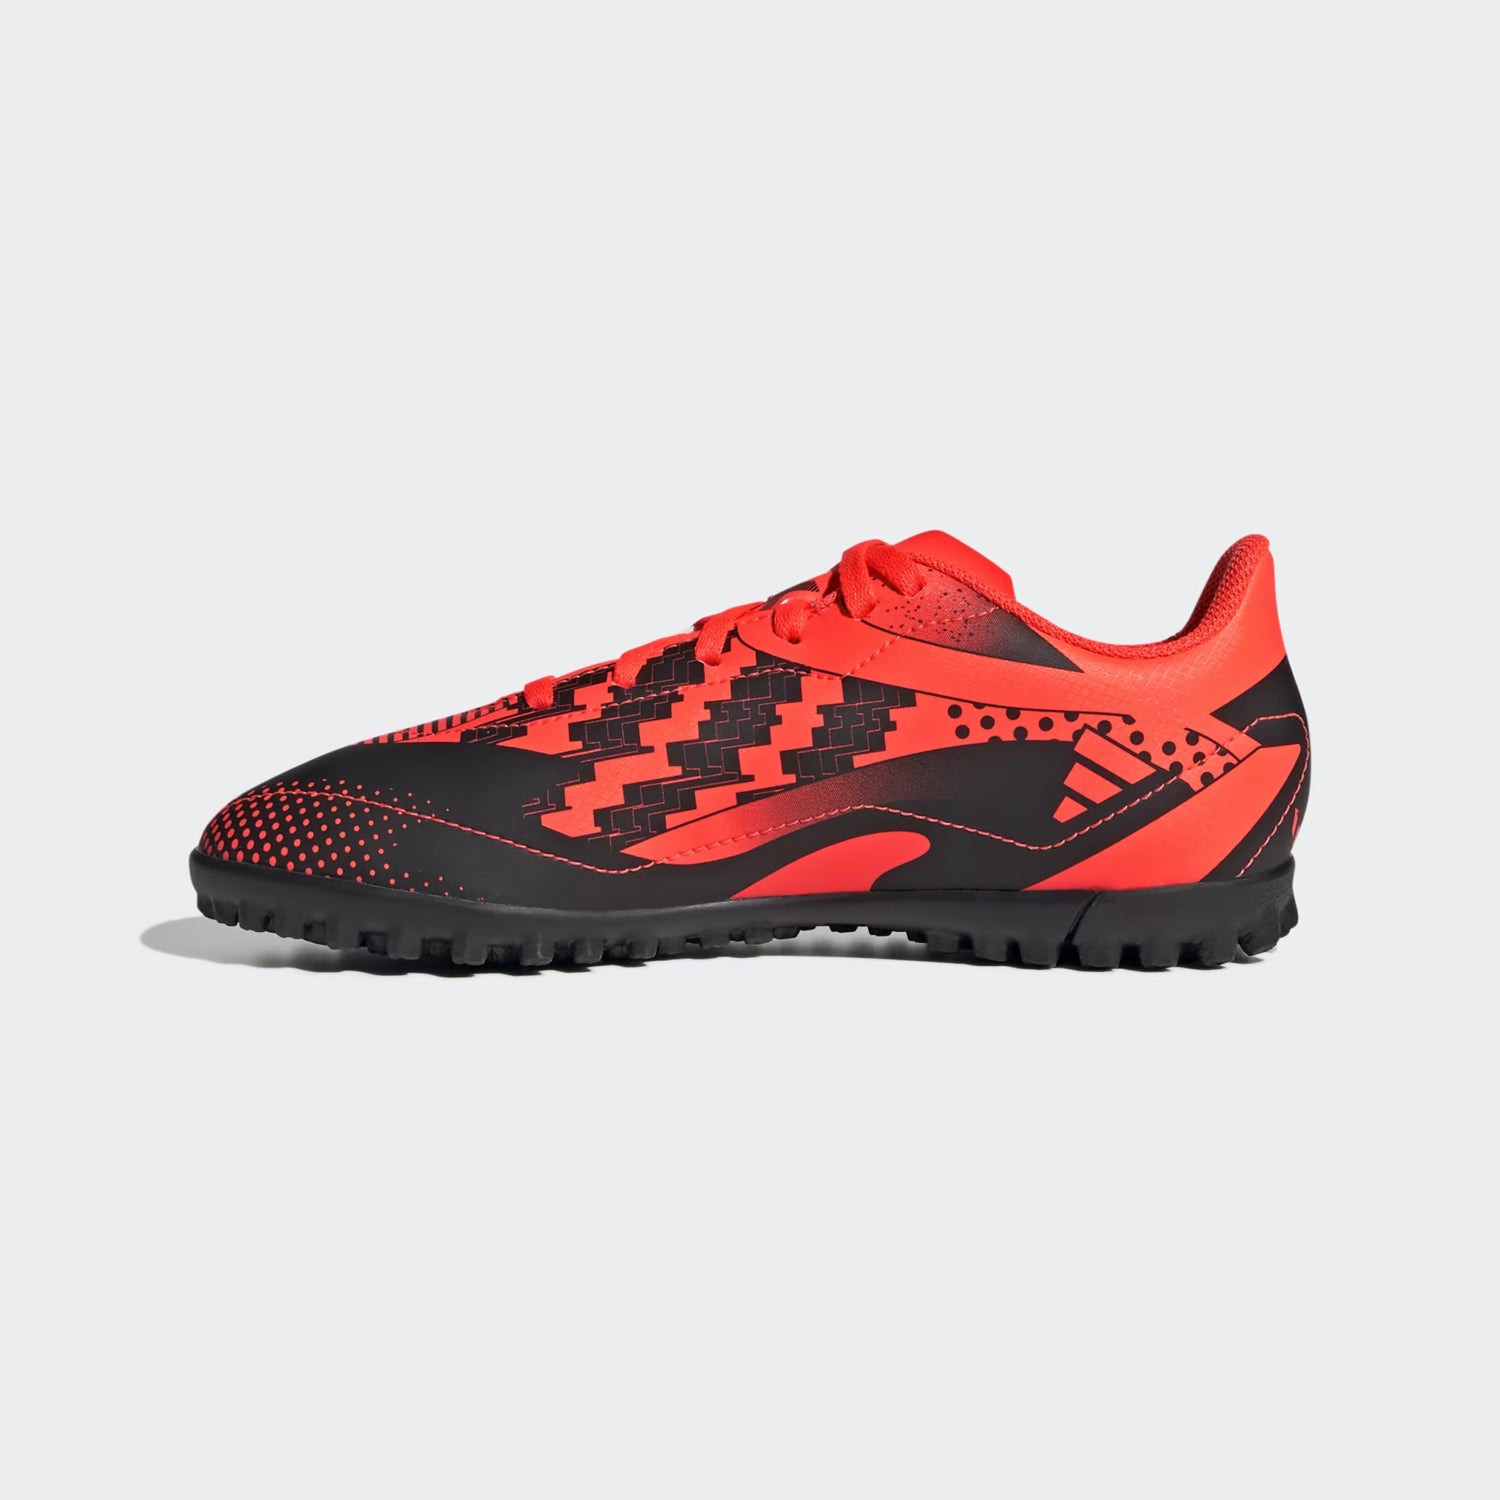 אדידס נעלי קטרגל בצבע כתום לילדים-Adidas-28-נאקו